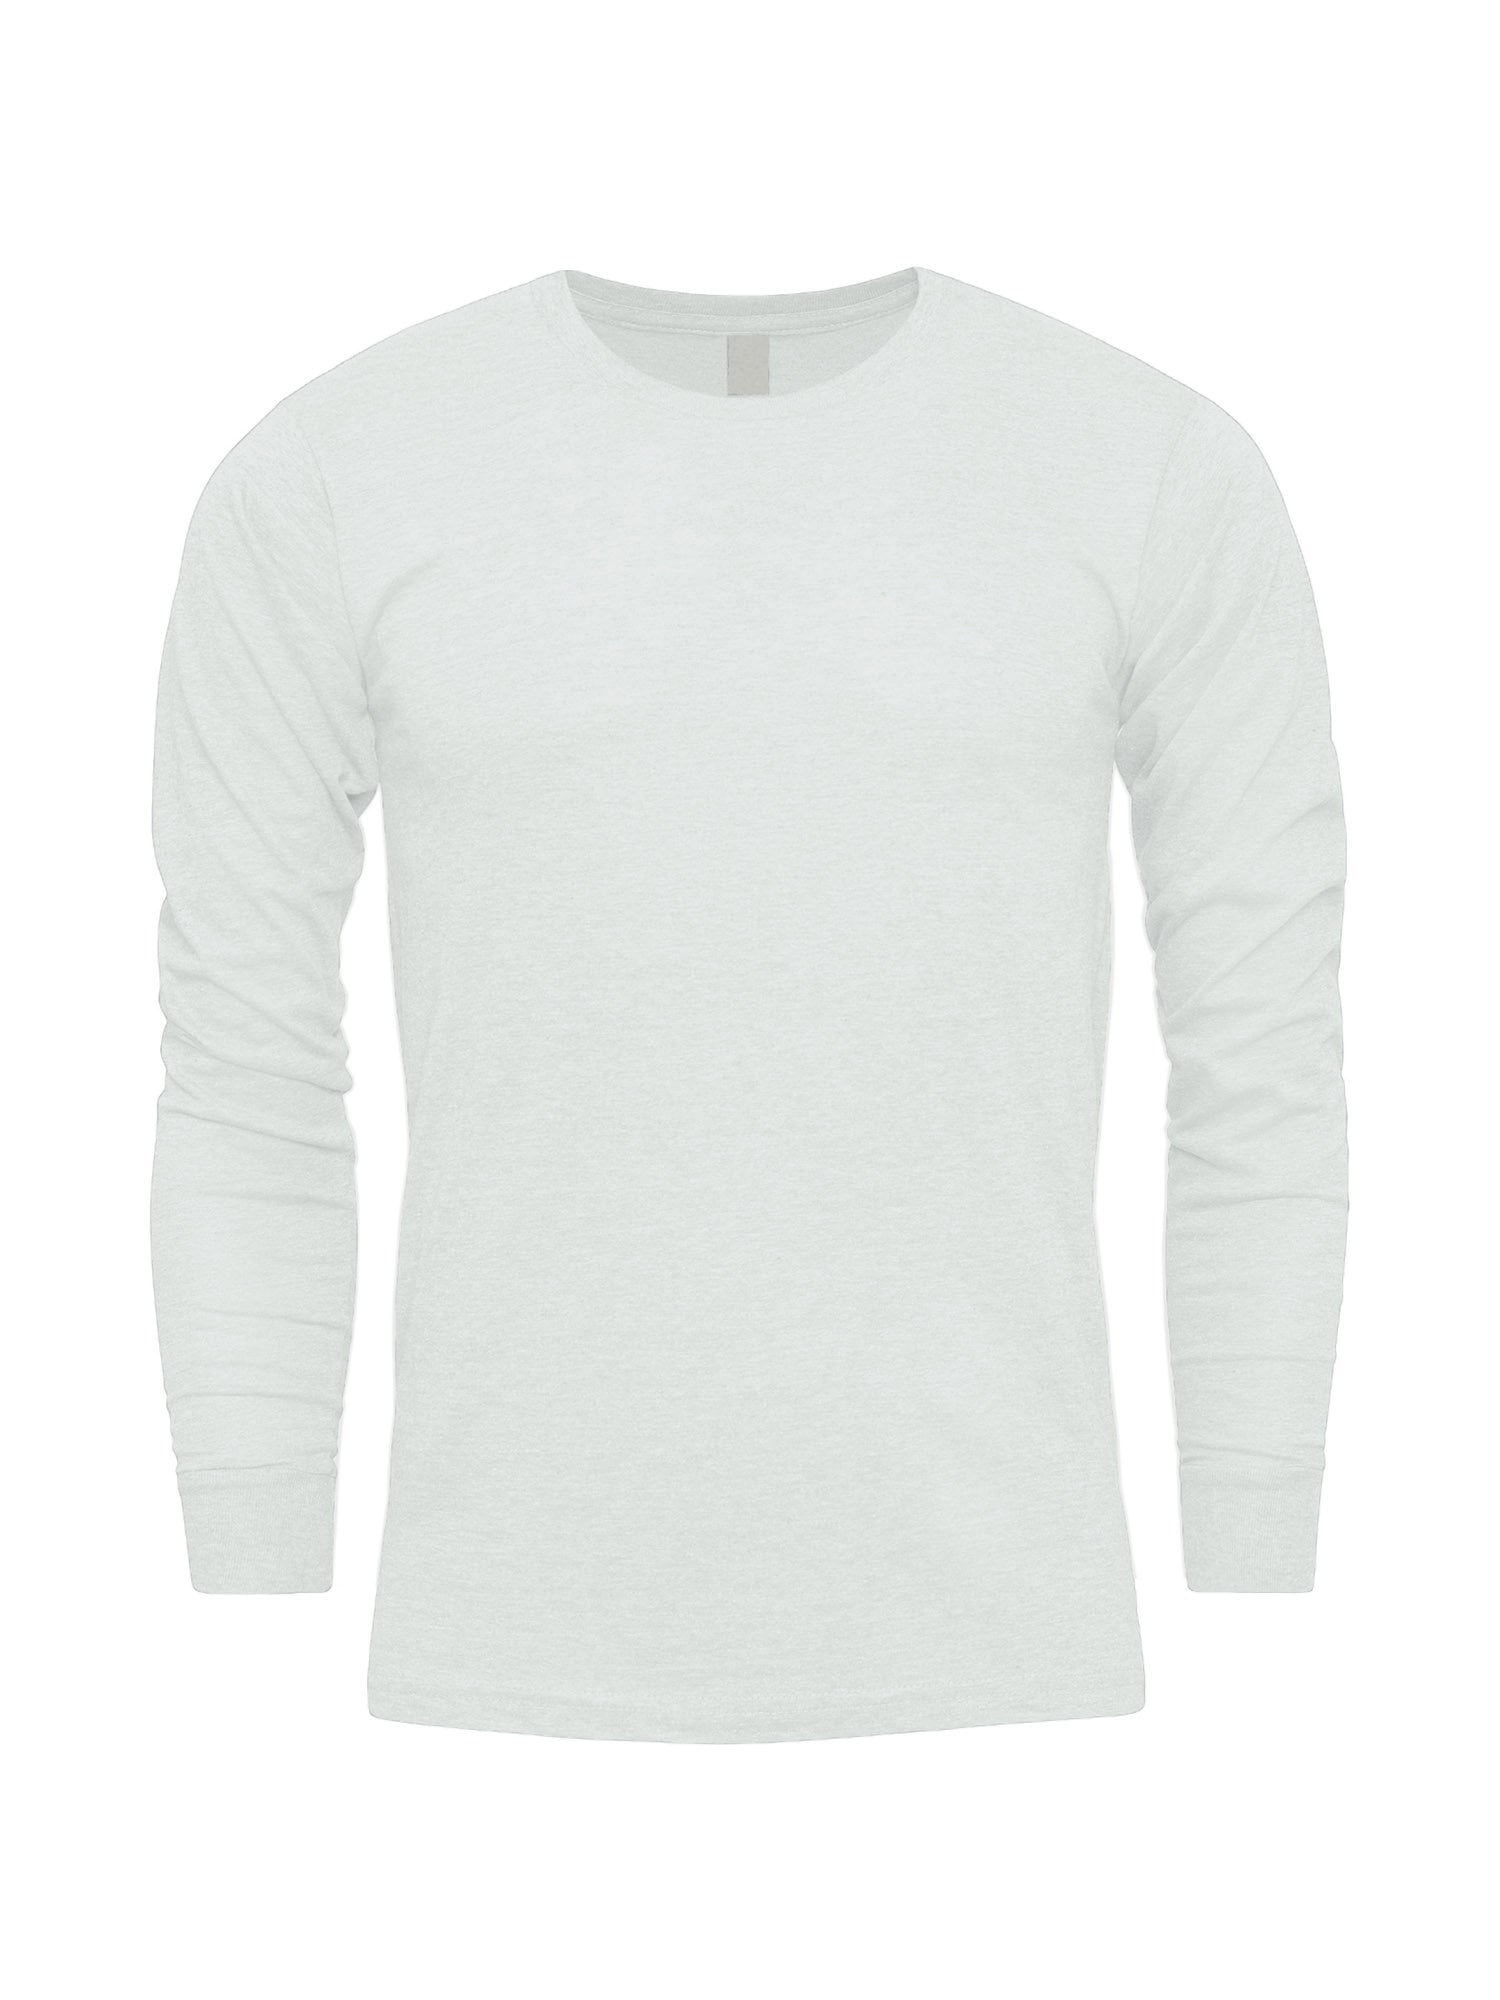 G-Style USA Men's Lightweight Cotton Blend Long Sleeve T-Shirt MTSC13161 -  Safety Green - Large 